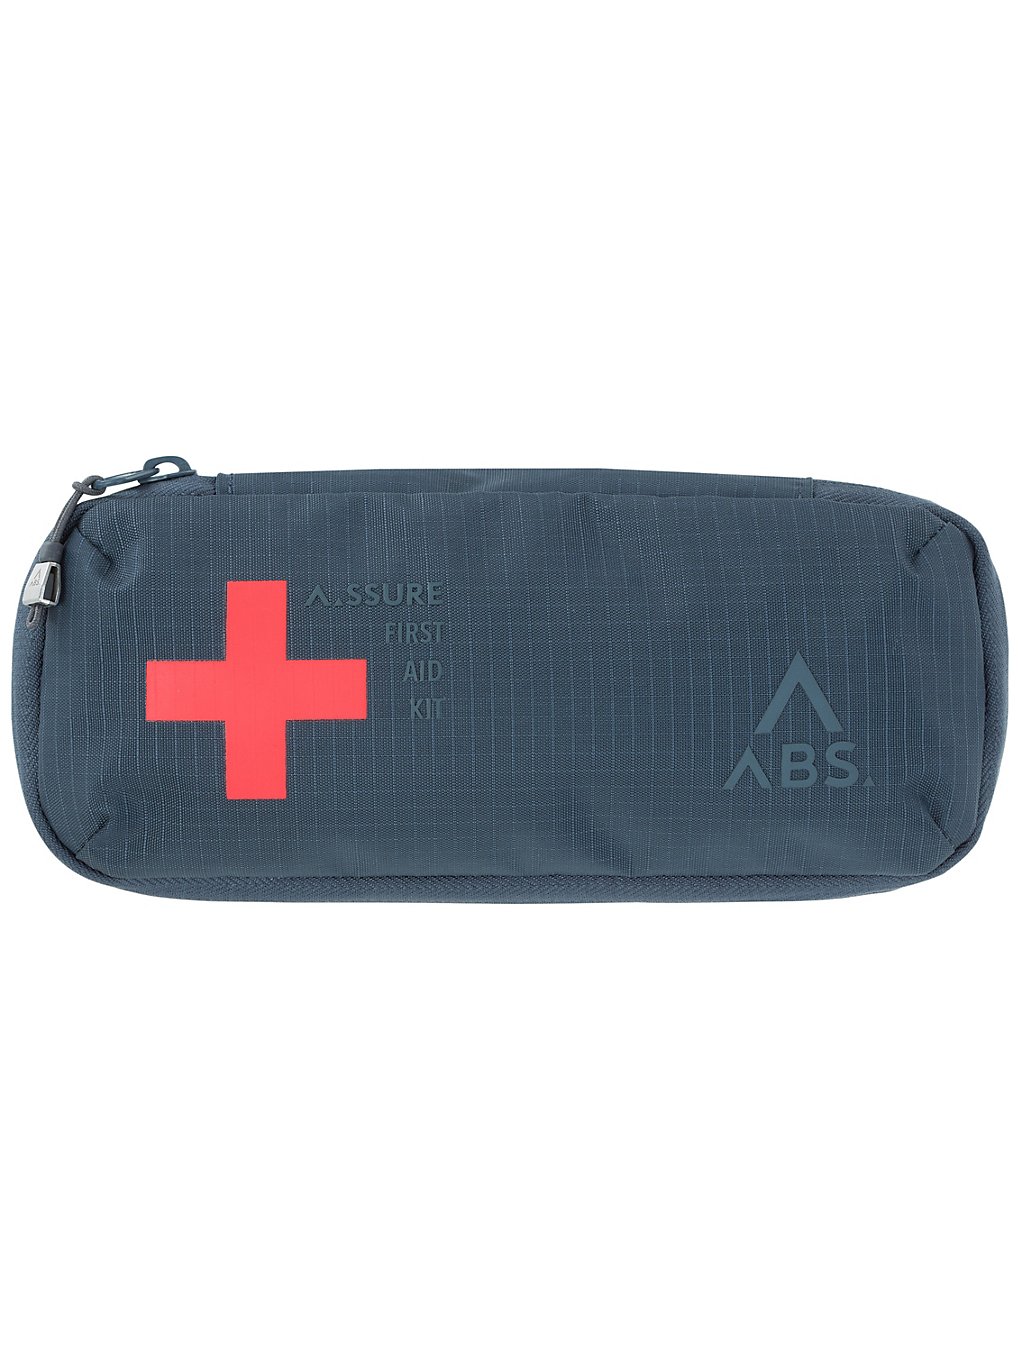 ABS First Aid Kit à motifs